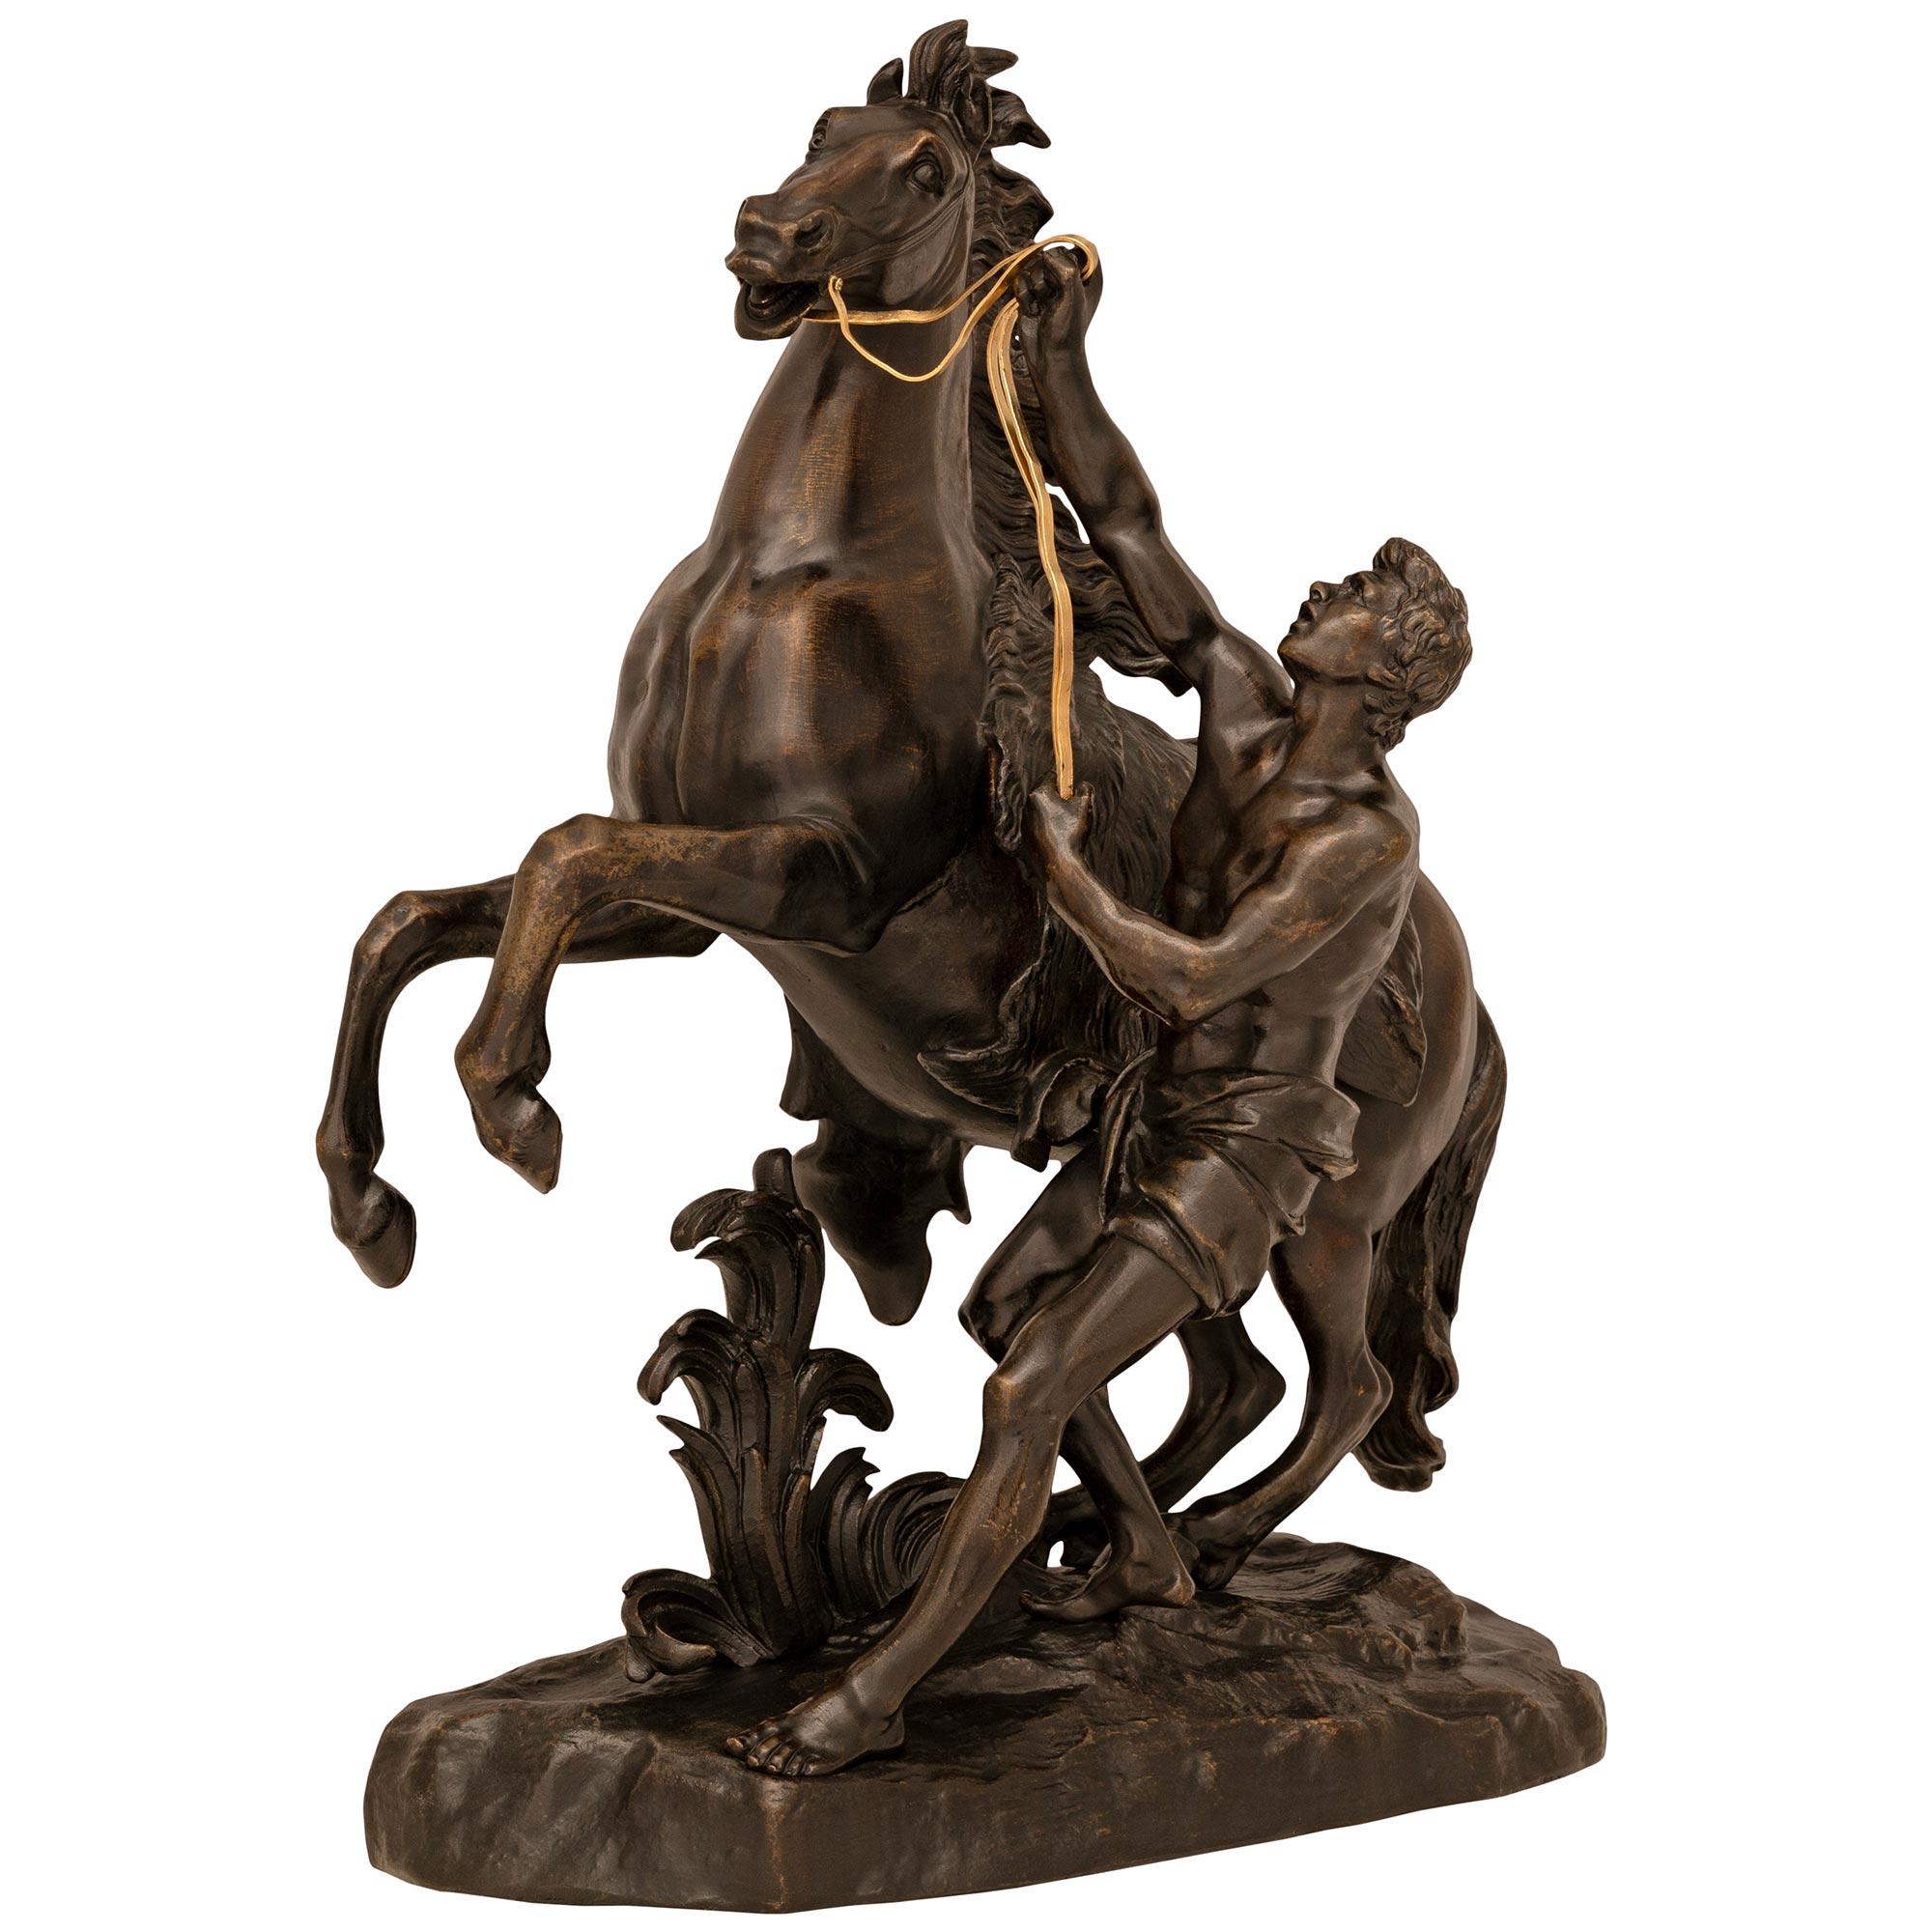 Une paire impressionnante et de grande taille de statues de chevaux Marli en bronze patiné du XIXe siècle, d'après un modèle de Coustou. Chaque statue est érigée sur une base conçue comme un rocher et un sol où les étalons merveilleusement détaillés